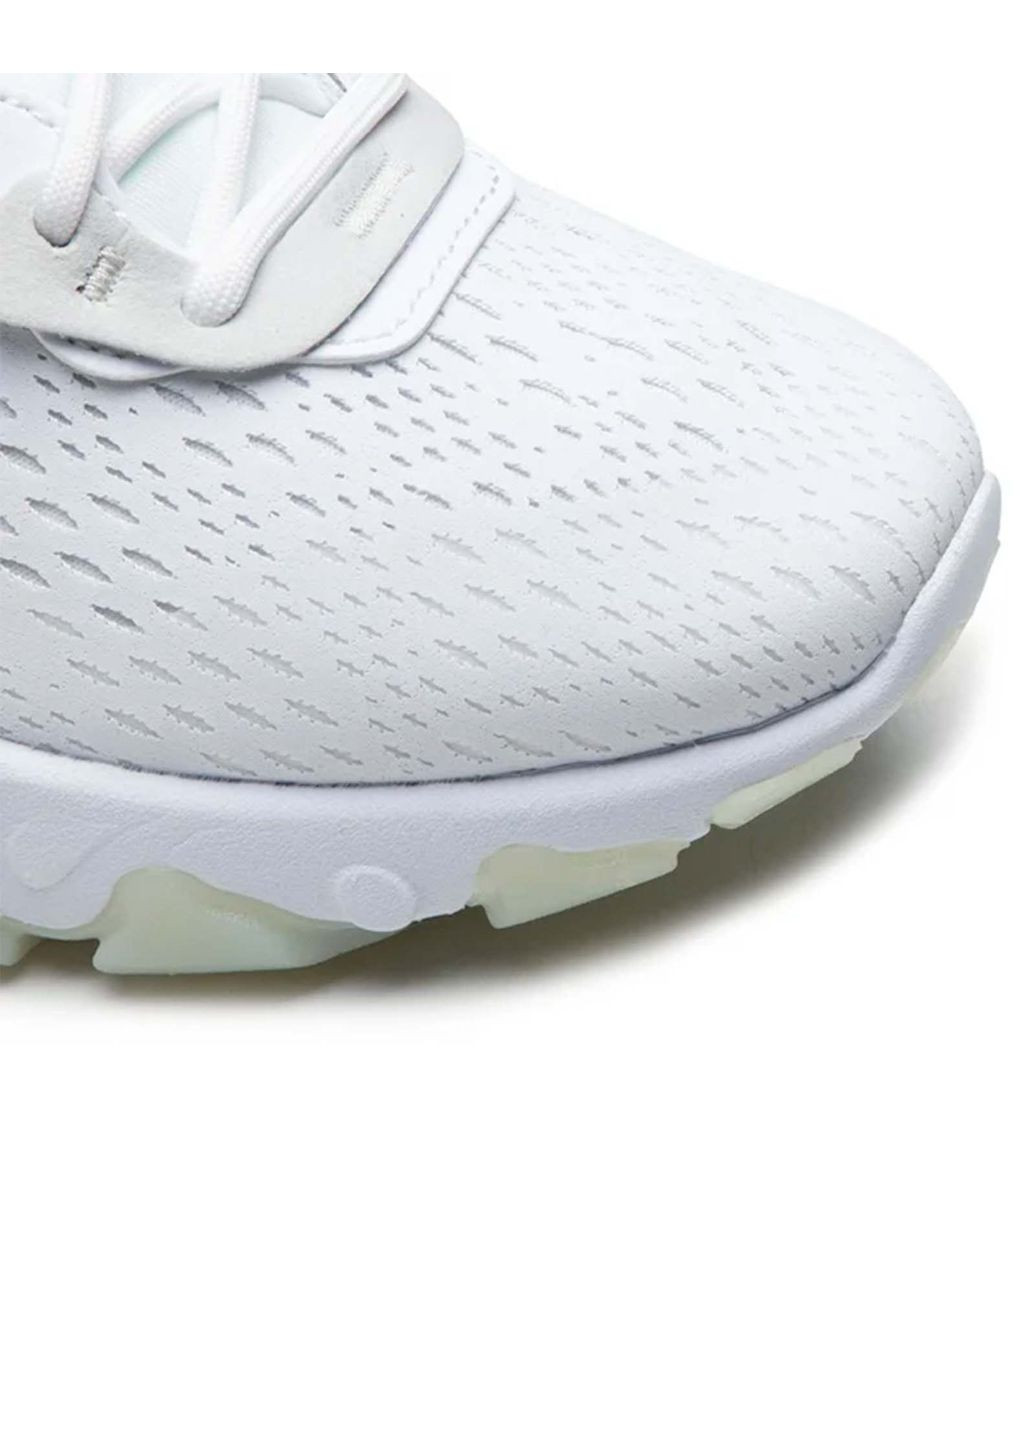 Белые всесезонные кроссовки мужские react vision cd4373-101 весна-лето текстиль сетка белые Nike